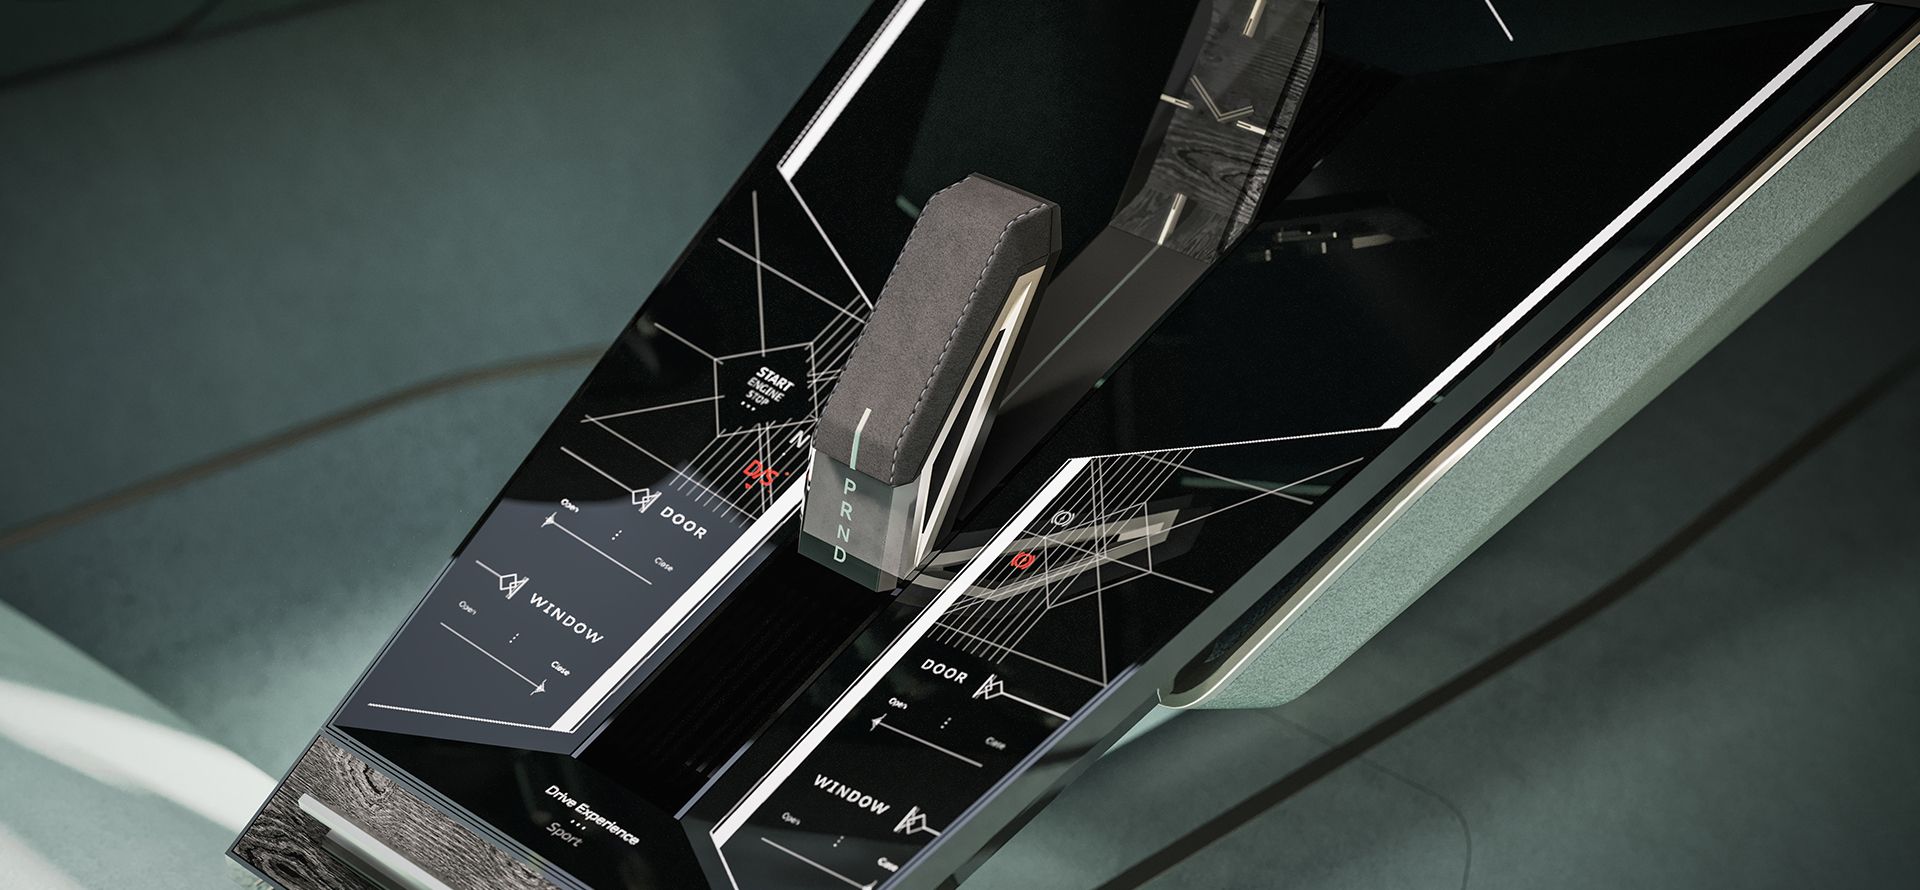 Audi skysphere'in orta konsolundaki kontrol elemanı